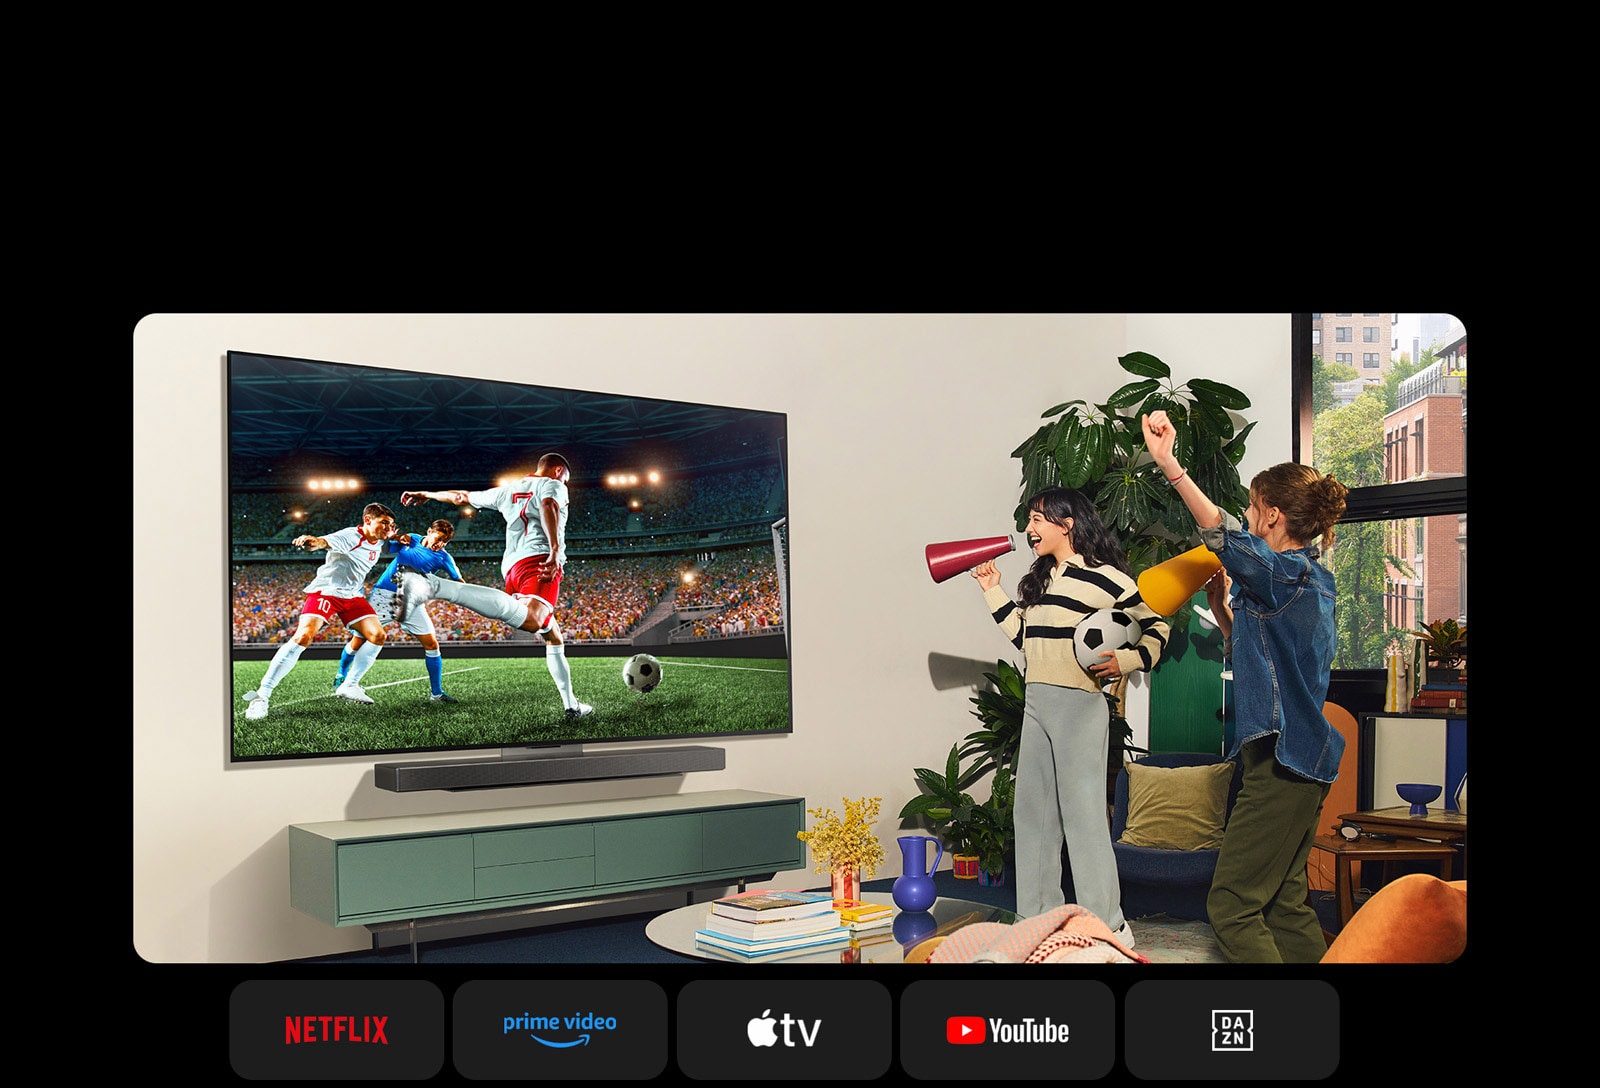 Két nő focimeccset néz egy hangulatos nappaliban. Az egyik nő egy focilabdát tart a kezében, és mindketten szurkolnak a csapatuknak sárga és piros hangszórókkal. Lent a következő logók láthatók: Netflix, Amazon Prime Video, Apple TV, Youtube, ESPN és DAZN.